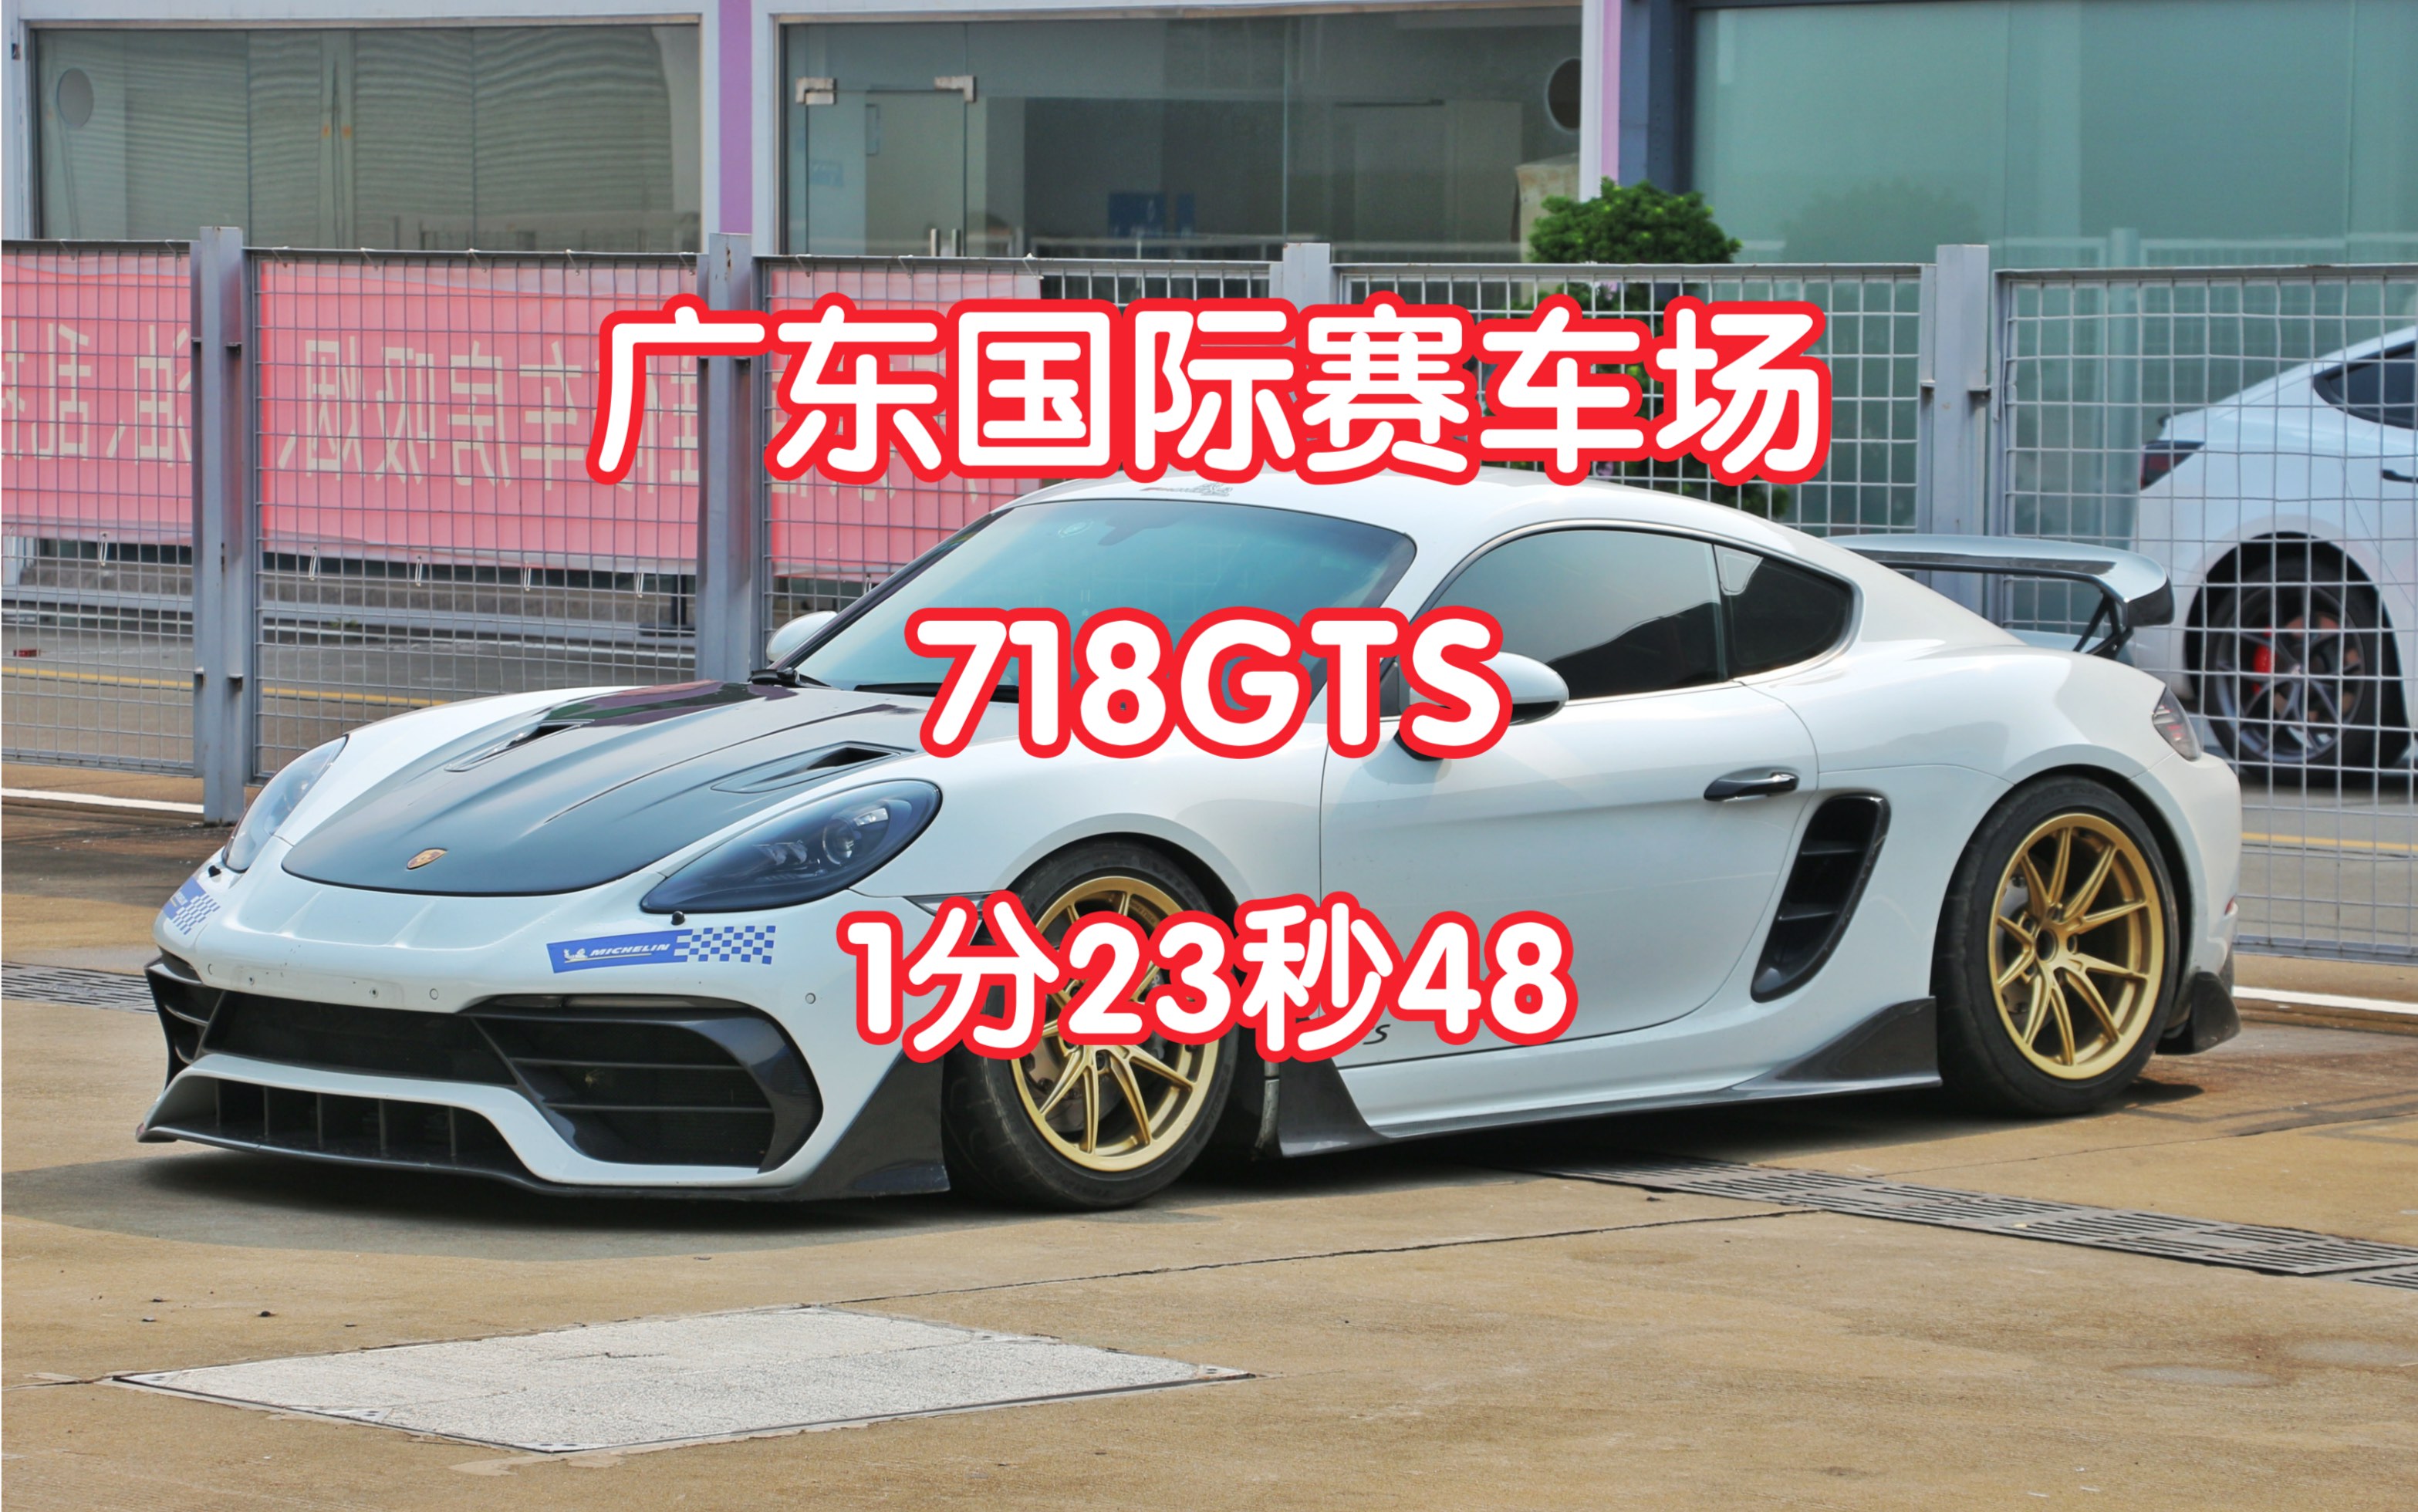 广东国际赛车场 718GTS 1分23秒 飞行圈视频